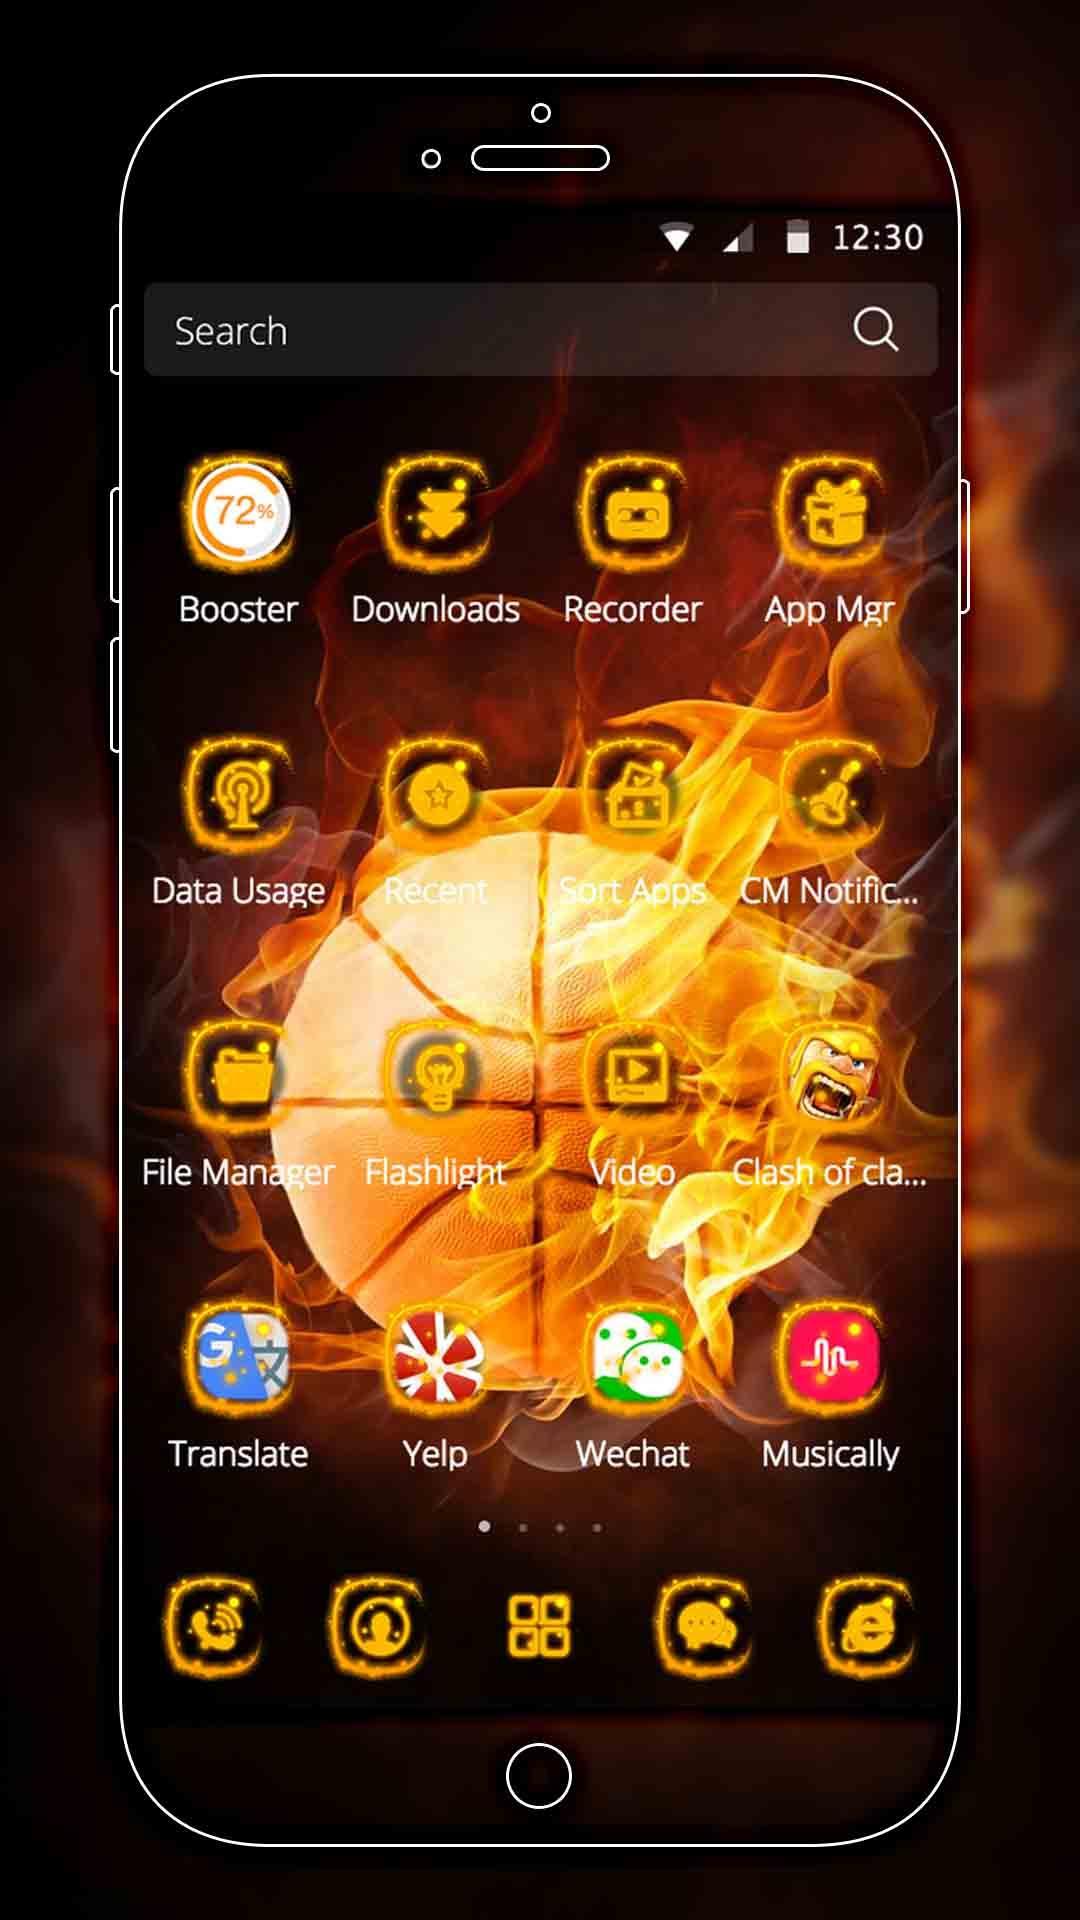 Android 用の クールバスケットボールファイヤーボールのテーマダーク炎の壁紙 Apk をダウンロード